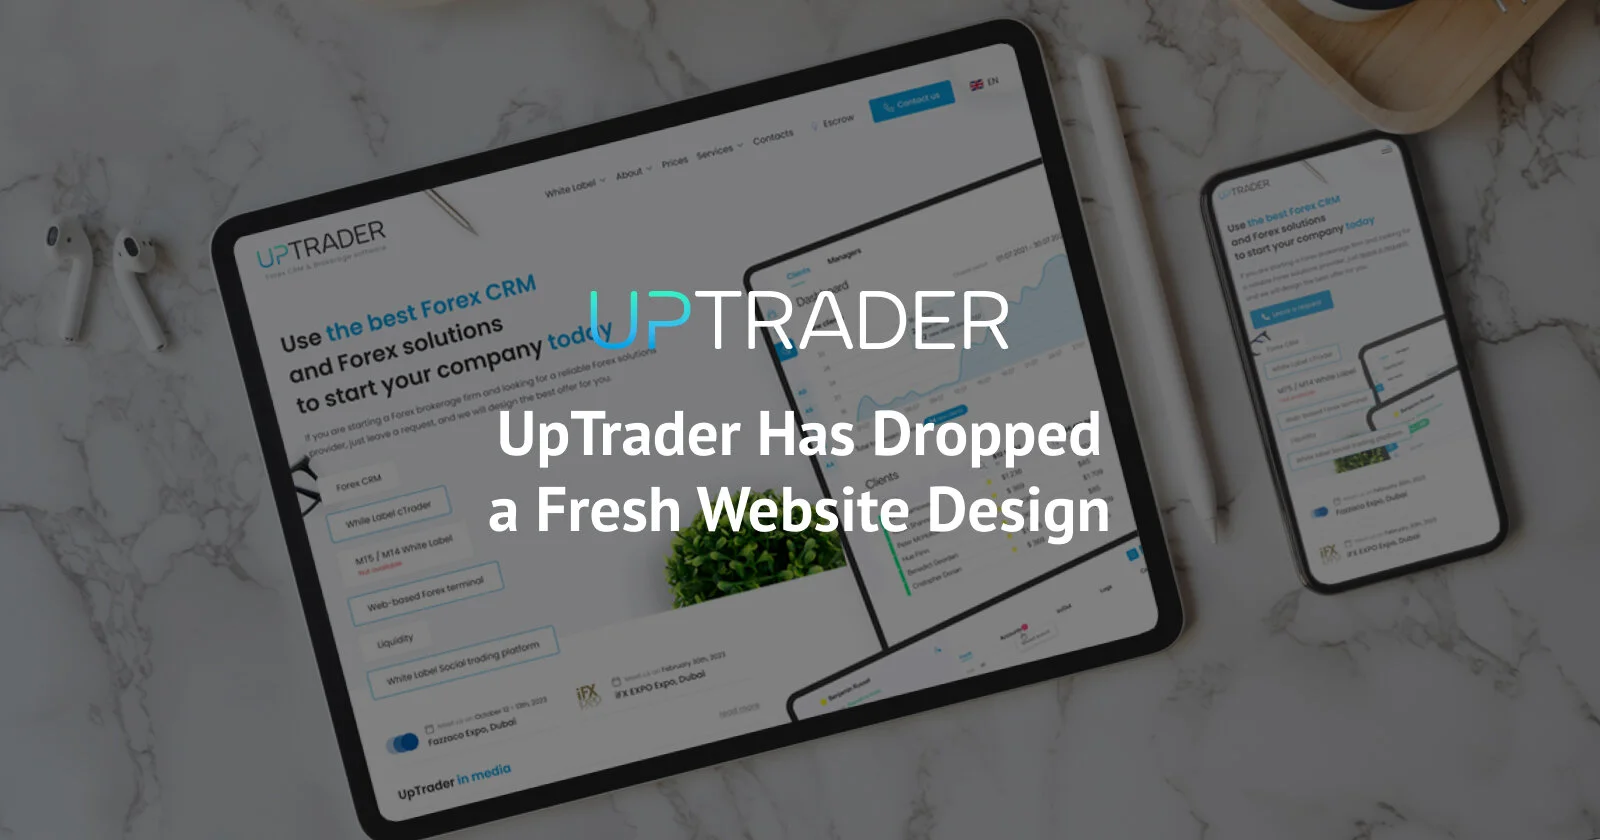 UpTrader Has Dropped a Fresh Website Design